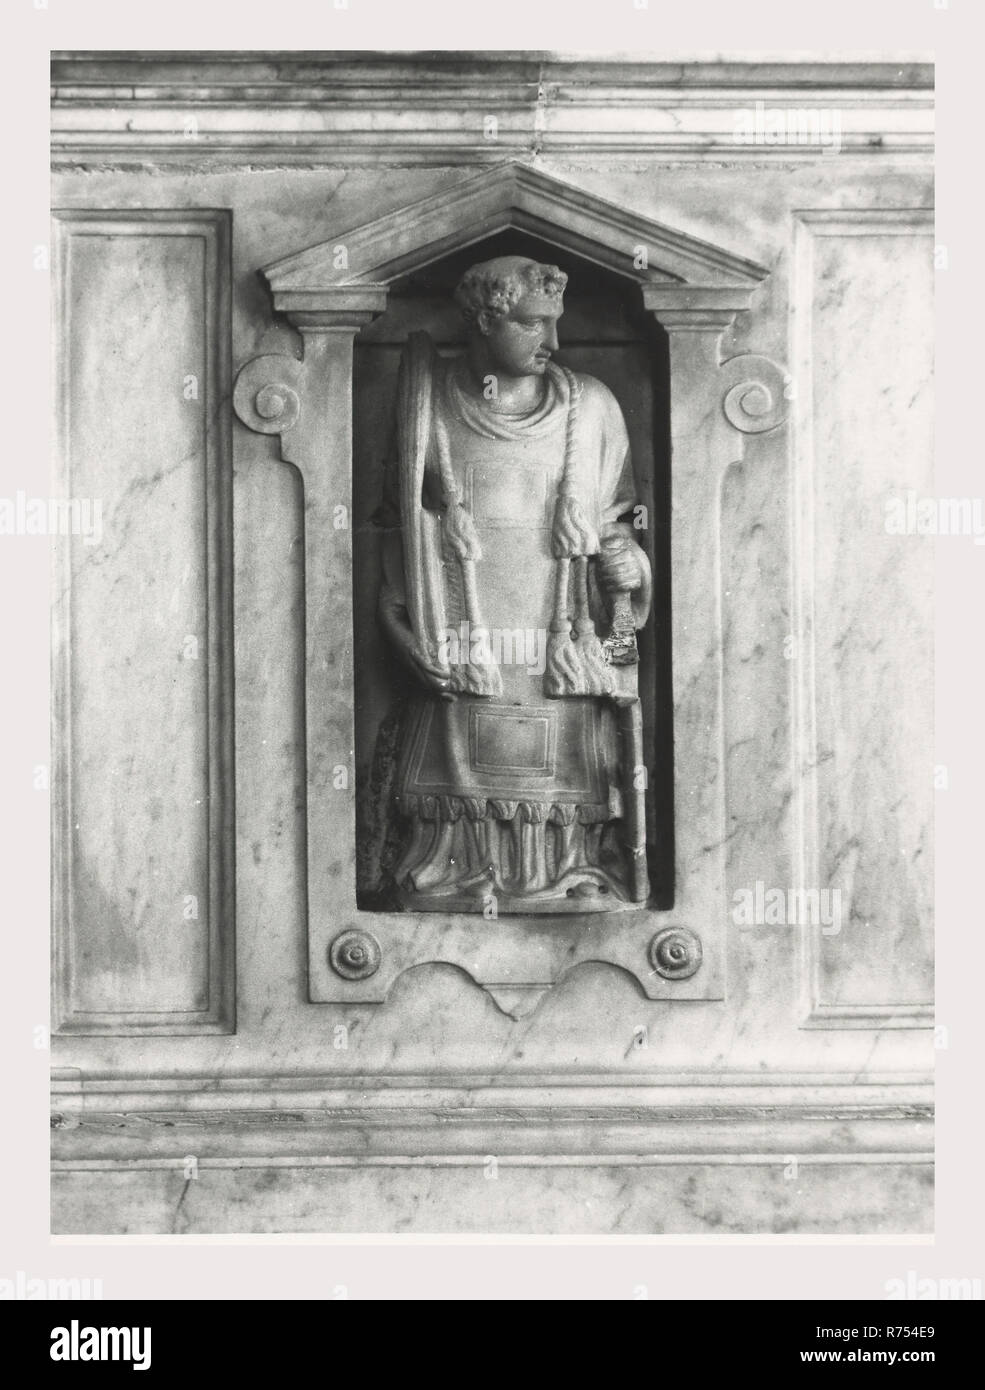 Umbrien Perugia Spello S. Lorenzo, das ist mein Italien, die italienische Land des Visual History, S. Lorenzo 1120 steht auf dem Gelände der ehemaligen S. Ercolano. Außenansichten der Portal aus dem 13. Jahrhundert und die Fassade im Jahr 1540 umgebaut. Blick auf den Innenbereich konzentriert sich auf die Malerei und Skulptur vom 15. bis 18. Jahrhunderts Marmor Intarsien Taufbecken 1607 Hauptaltar Baldachin eine Nachahmung des in St. Peter, Rom Holz Intarsien choirstalls aus Holz und Brust in der Sakristei mit dem intarsiaed dar, Mose, Noah und Zaccariah hölzerne Kanzel mit Reliefs des Martyriums des S. Lorenzo Fresken in Th Stockfoto